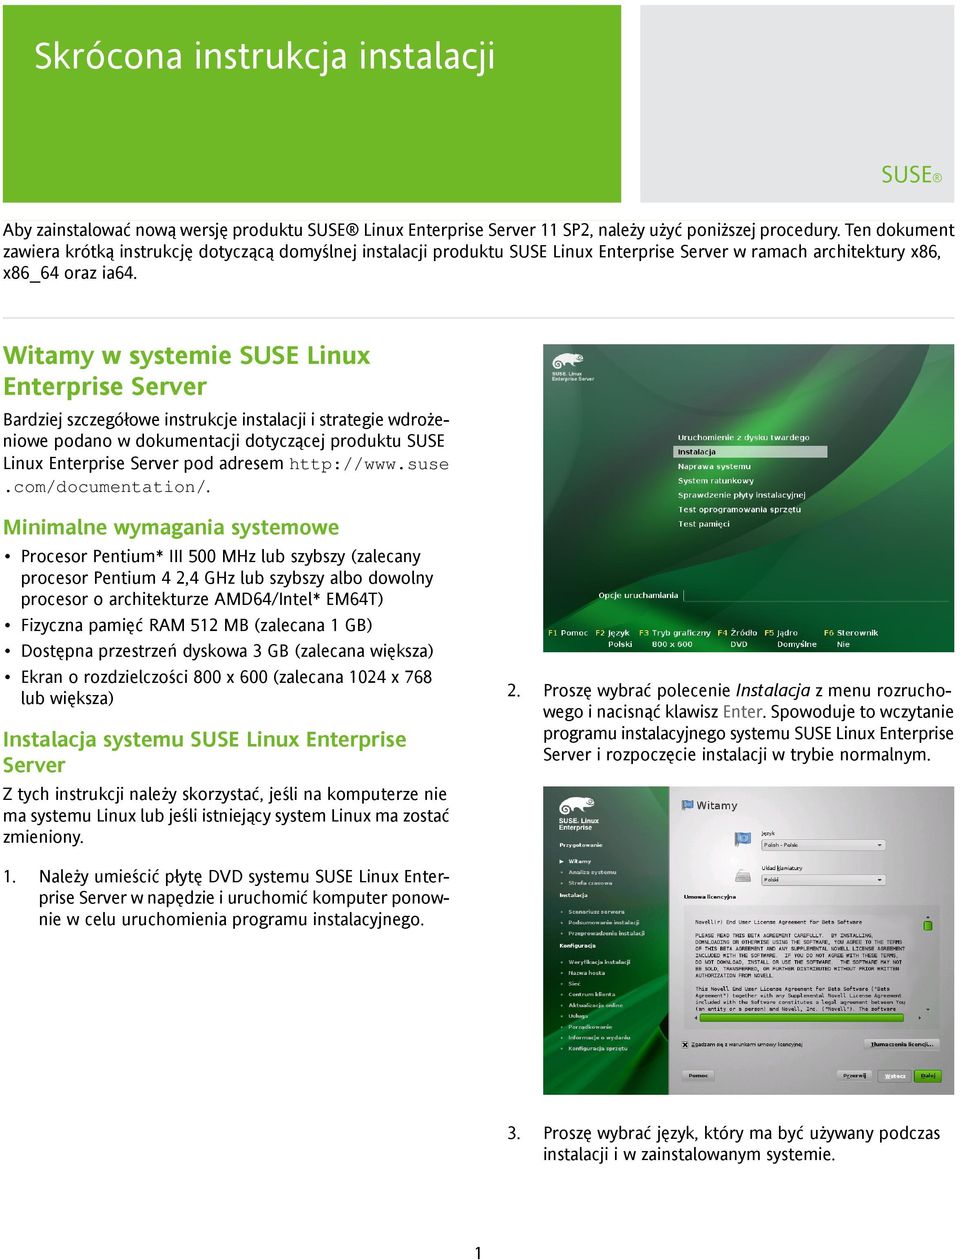 Witamy w systemie SUSE Linux Enterprise Server Bardziej szczegółowe instrukcje instalacji i strategie wdrożeniowe podano w dokumentacji dotyczącej produktu SUSE Linux Enterprise Server pod adresem